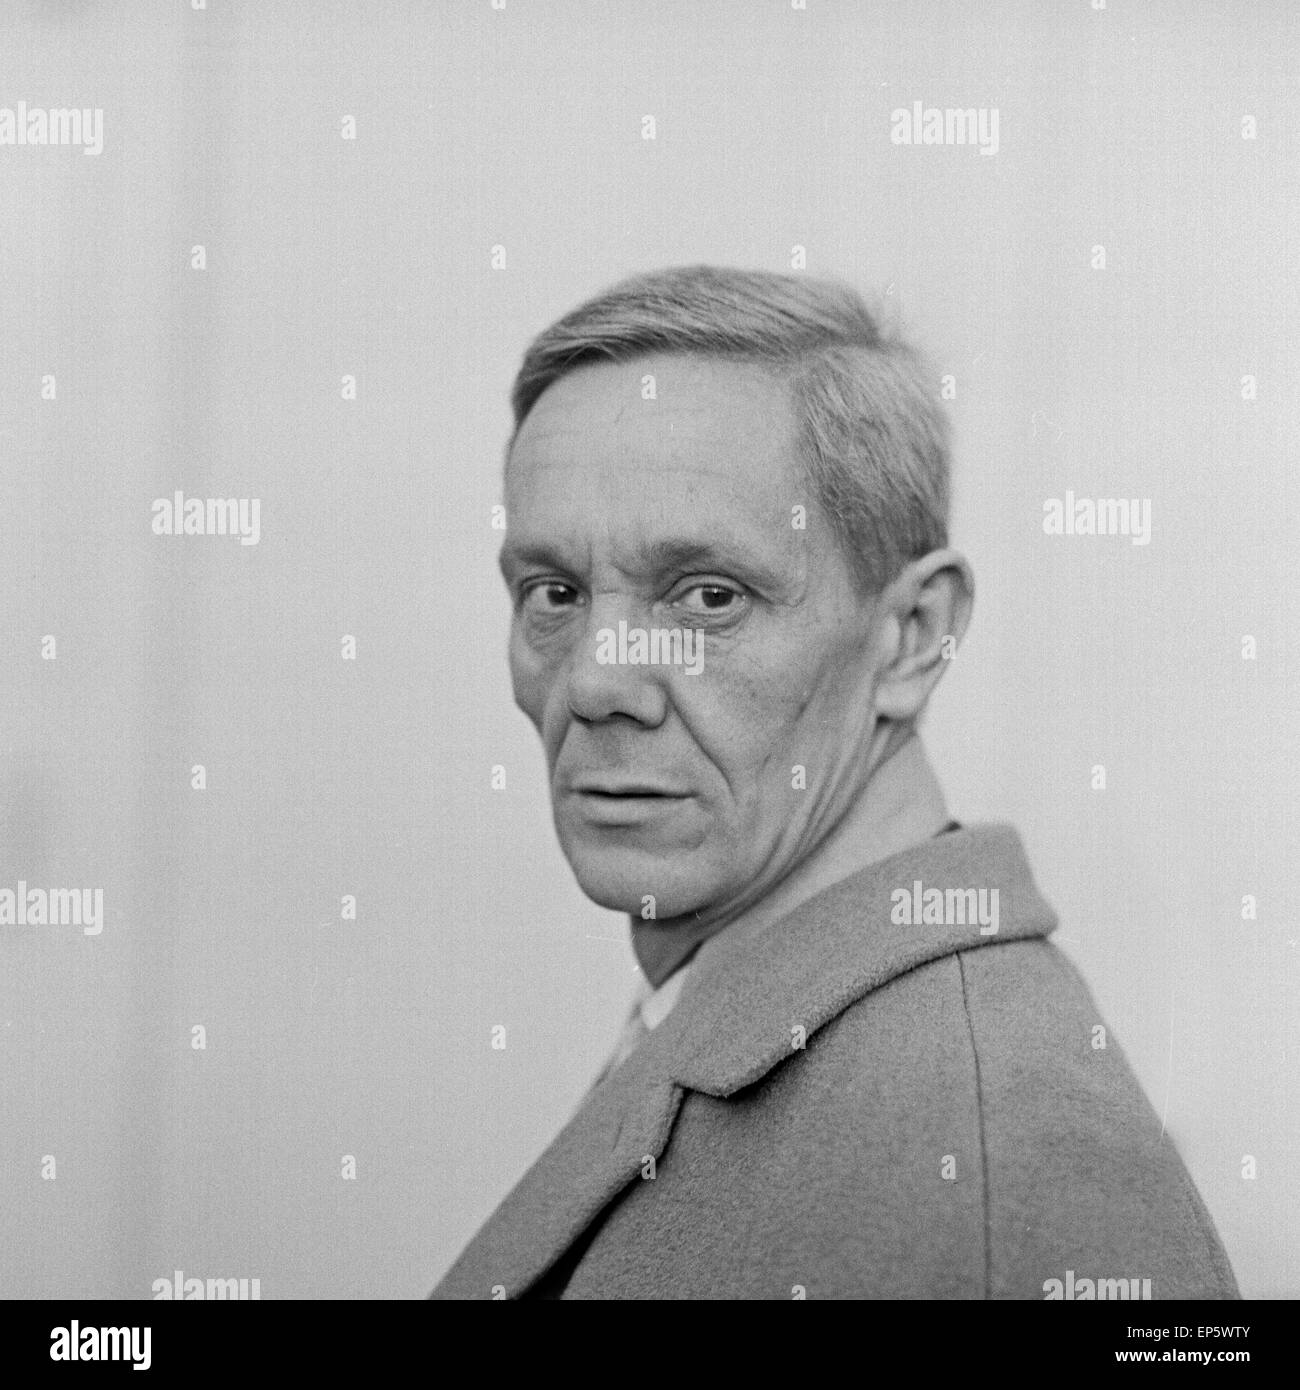 Deutscher Schauspieler Georg Lehn in Hamburg, Deutschland 1960er Jahre. German actor Georg Lehn at Hamburg, Germany 1960s. Stock Photo